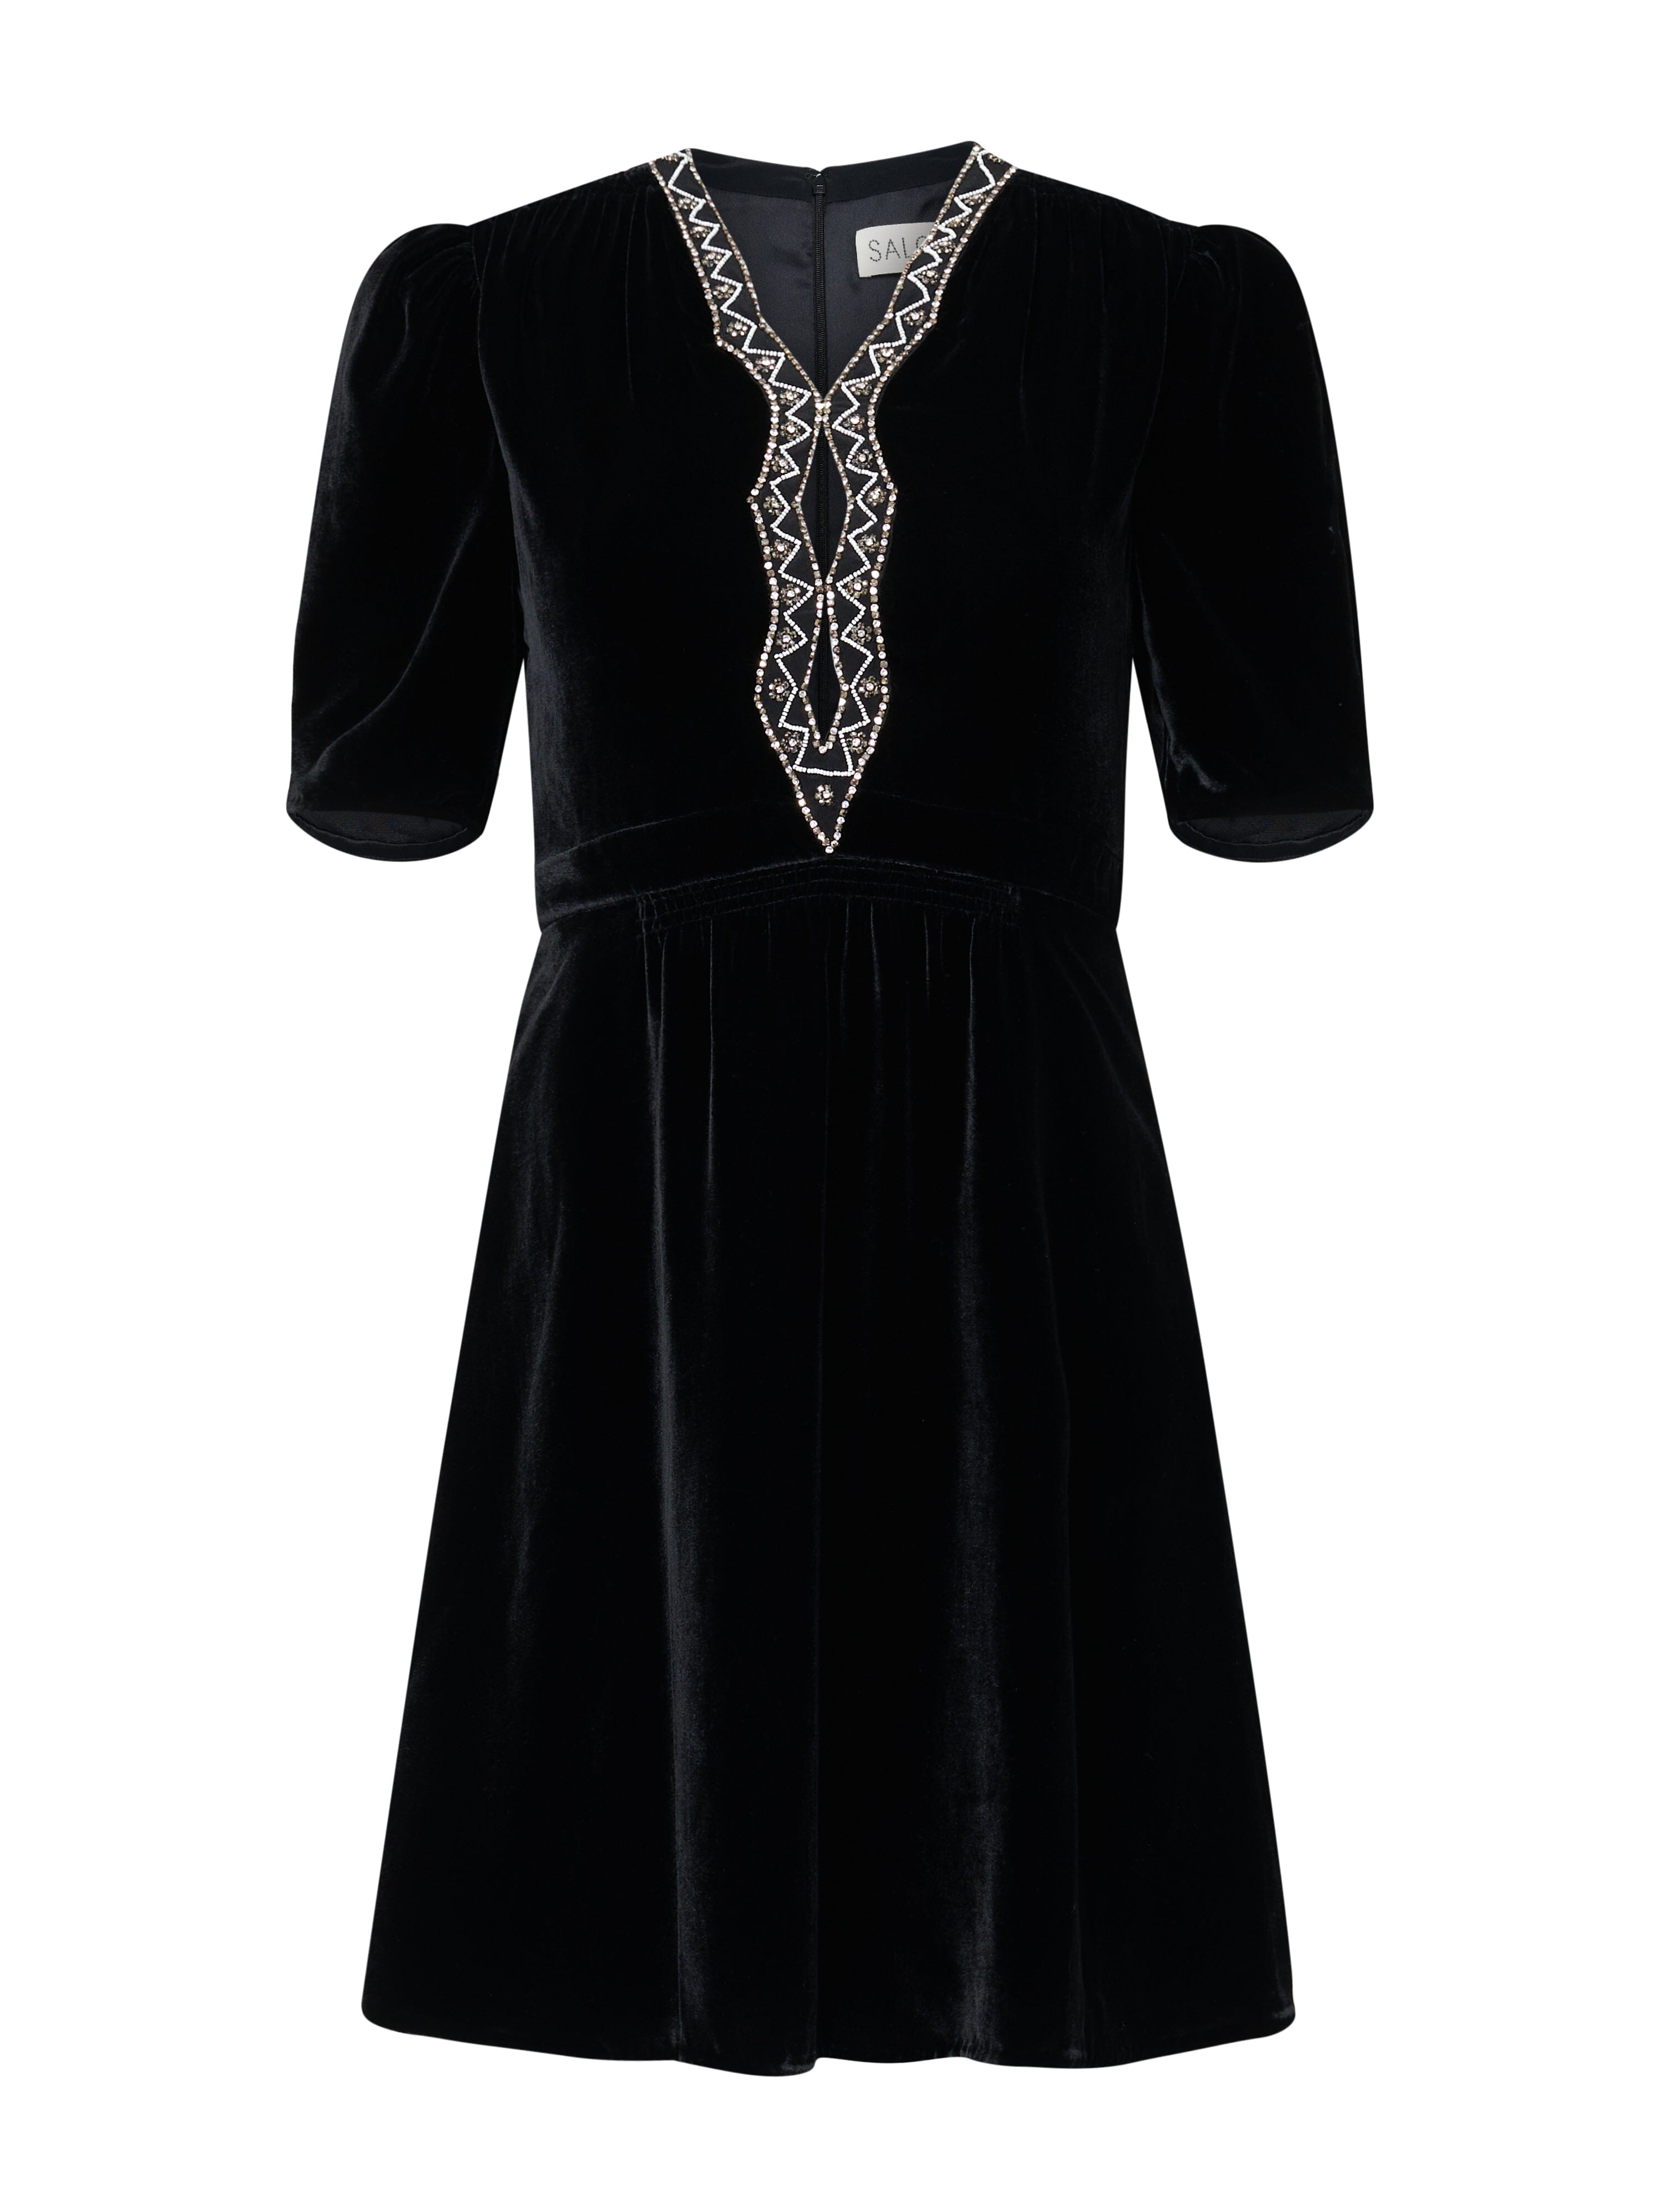 Tabitha Mini Dress in Black Diamante Embroidery